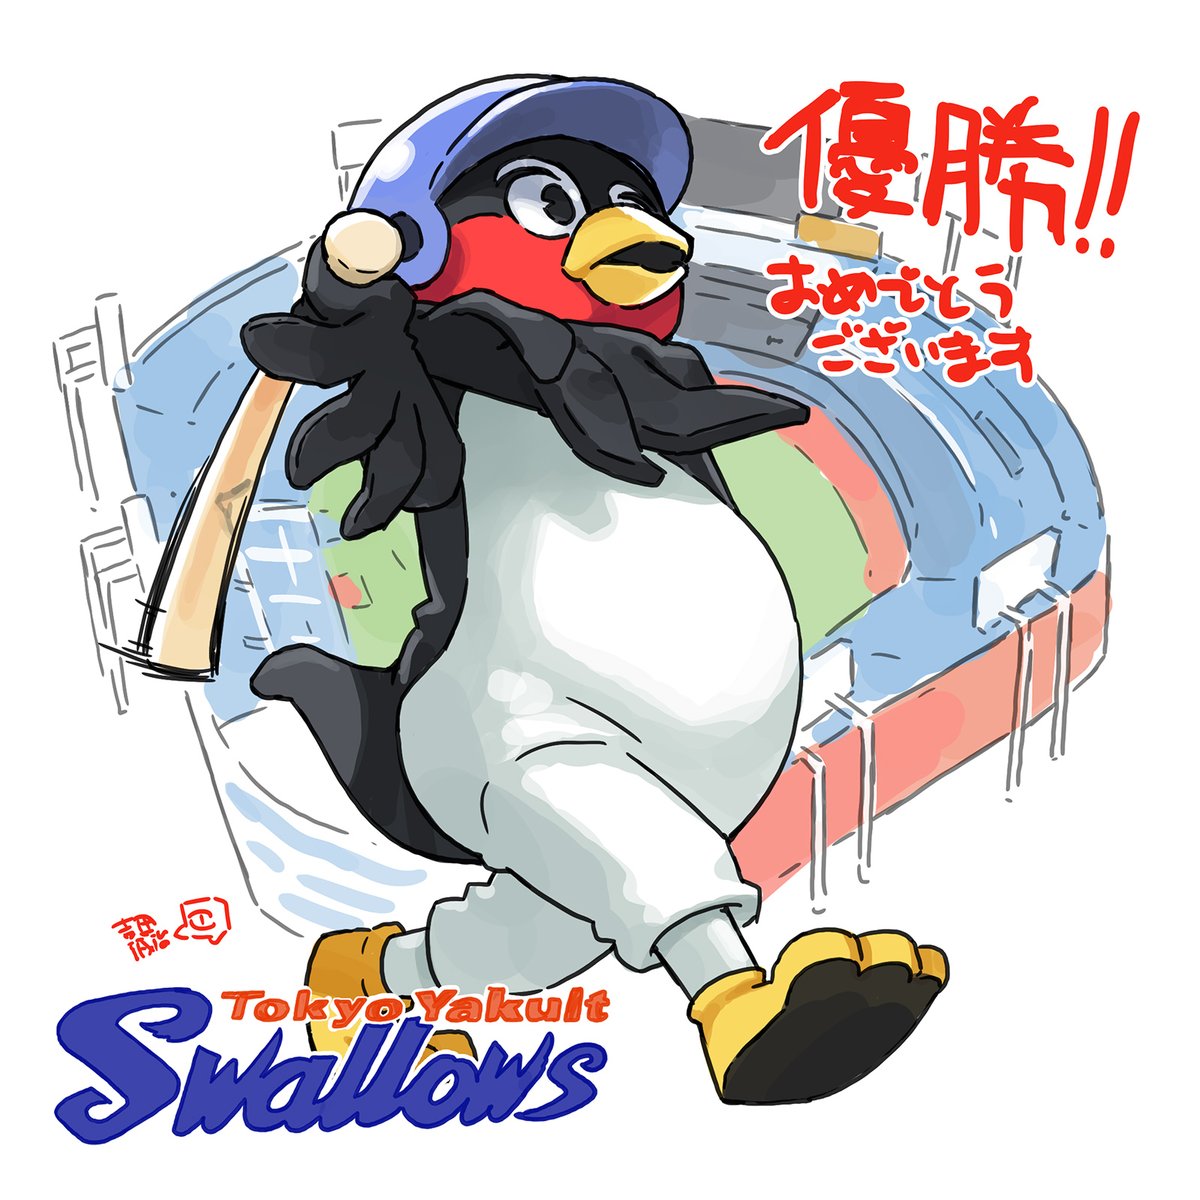 「優勝おめでとうございます! #swallows 」|吉田誠治のイラスト